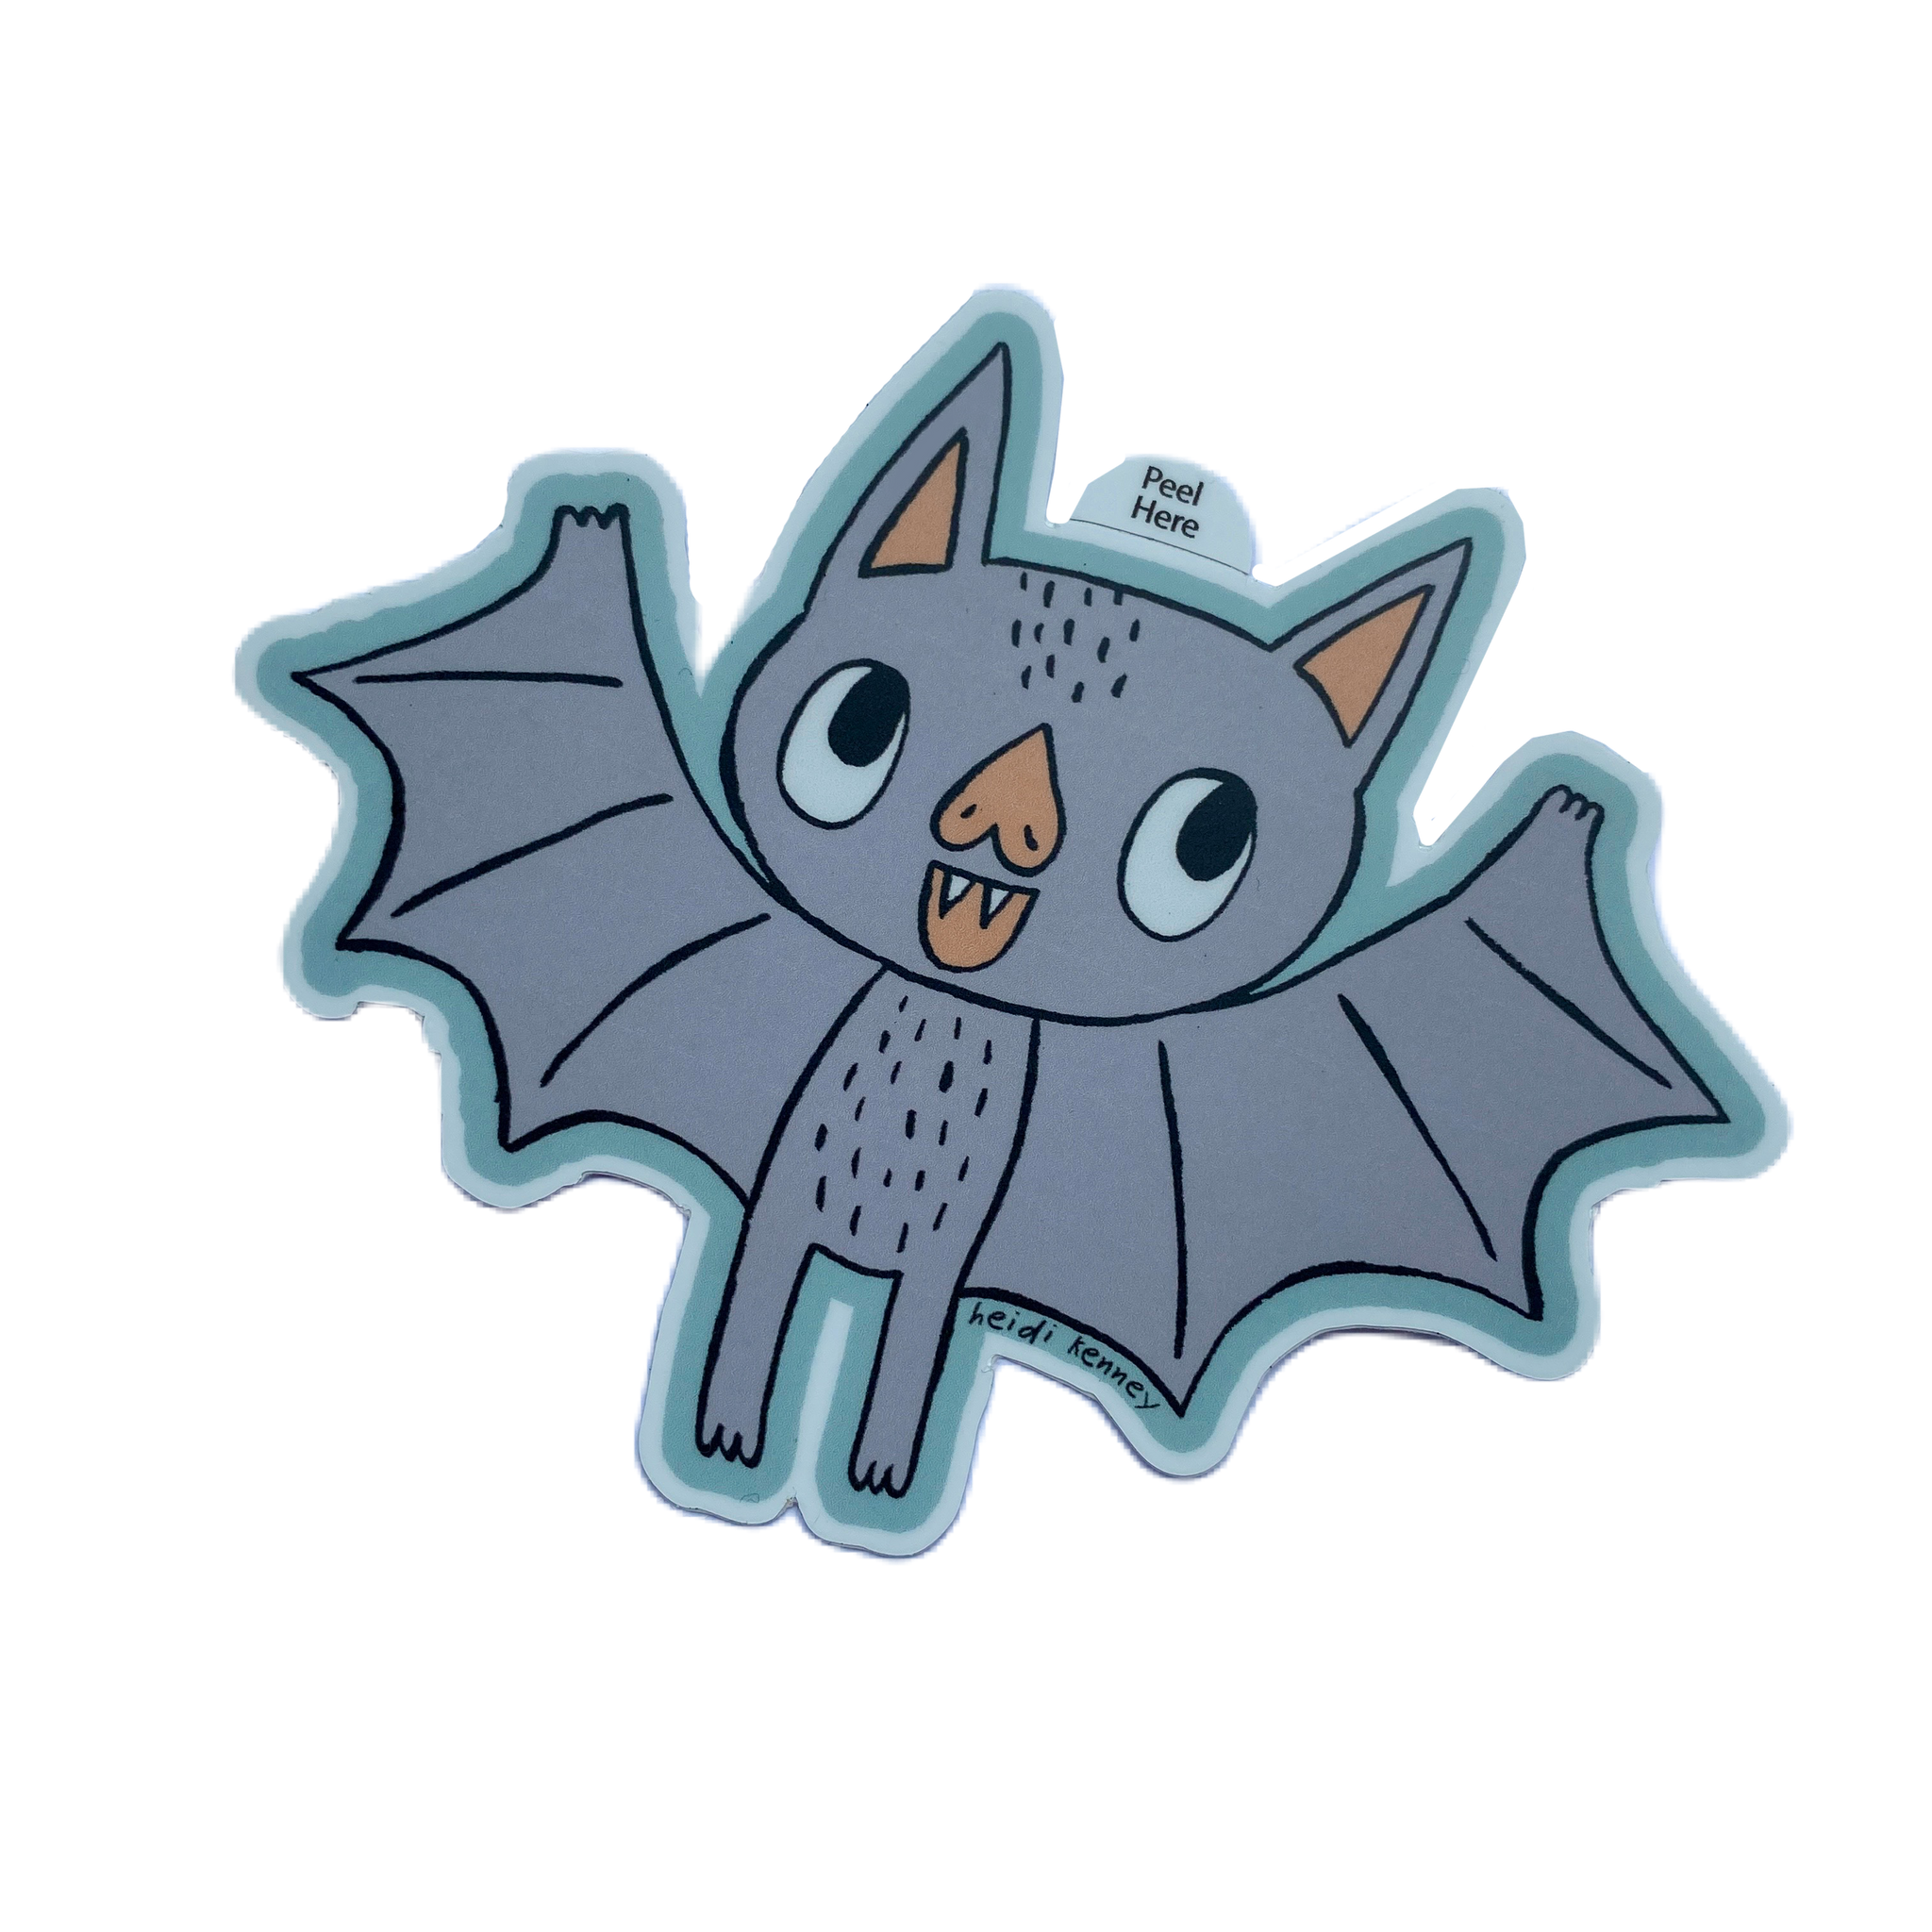 Flying Bat Sticker 4" across